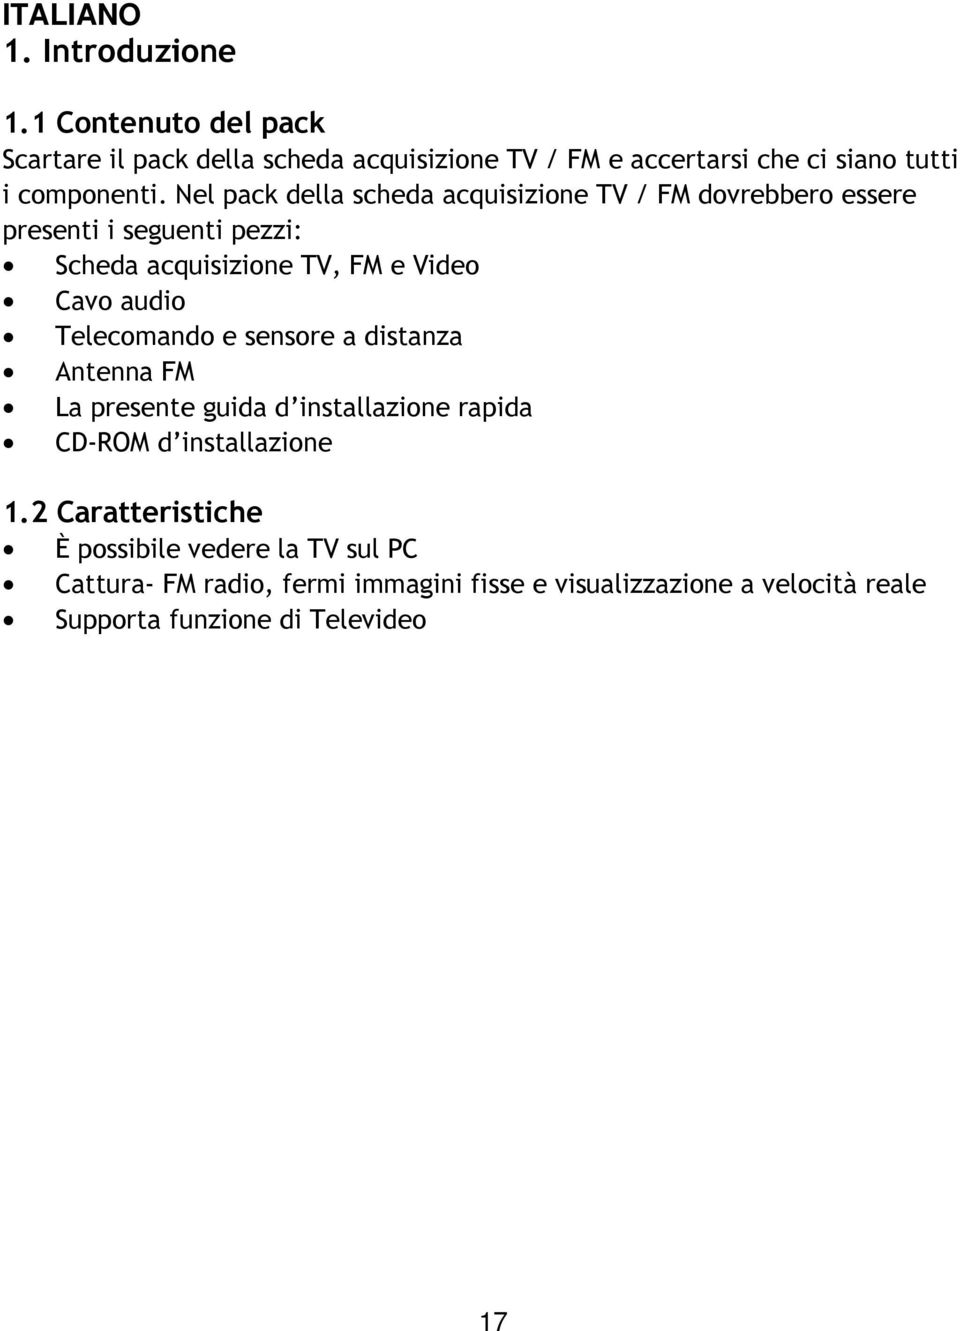 Nel pack della scheda acquisizione TV / FM dovrebbero essere presenti i seguenti pezzi: Scheda acquisizione TV, FM e Video Cavo audio